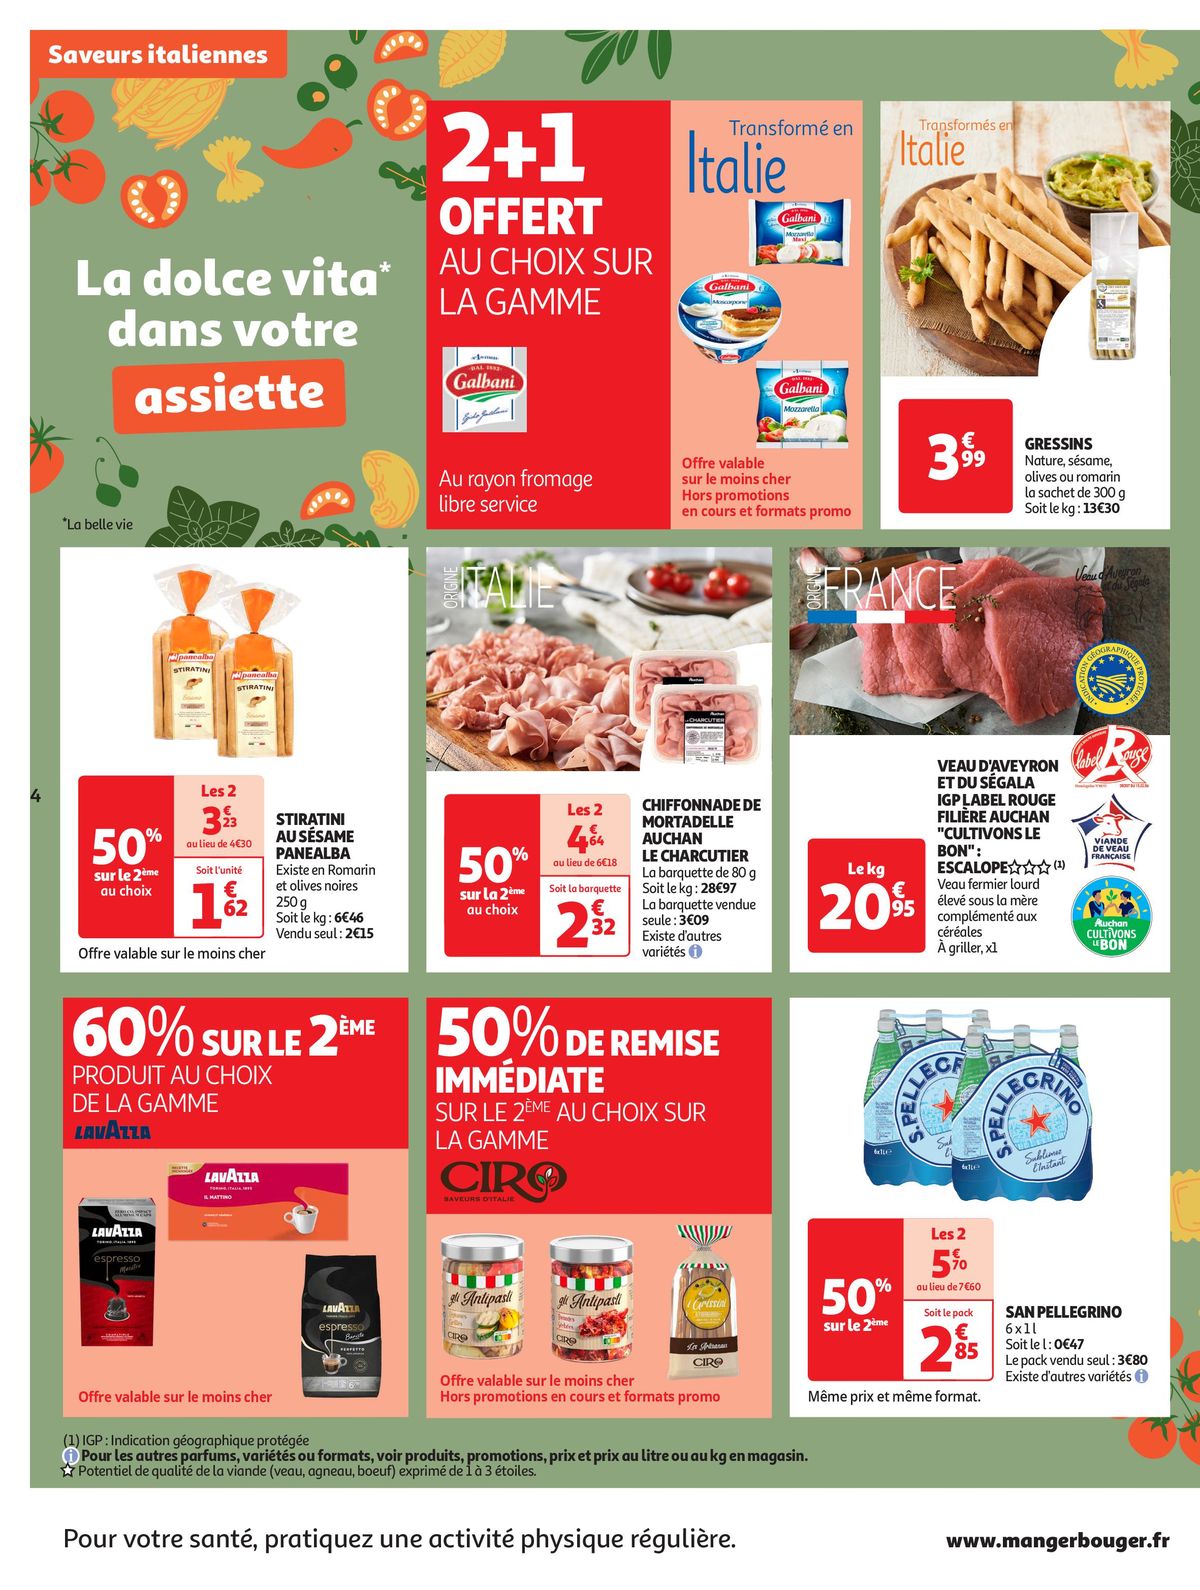 Catalogue La dolce vita dans votre assiette, page 00004